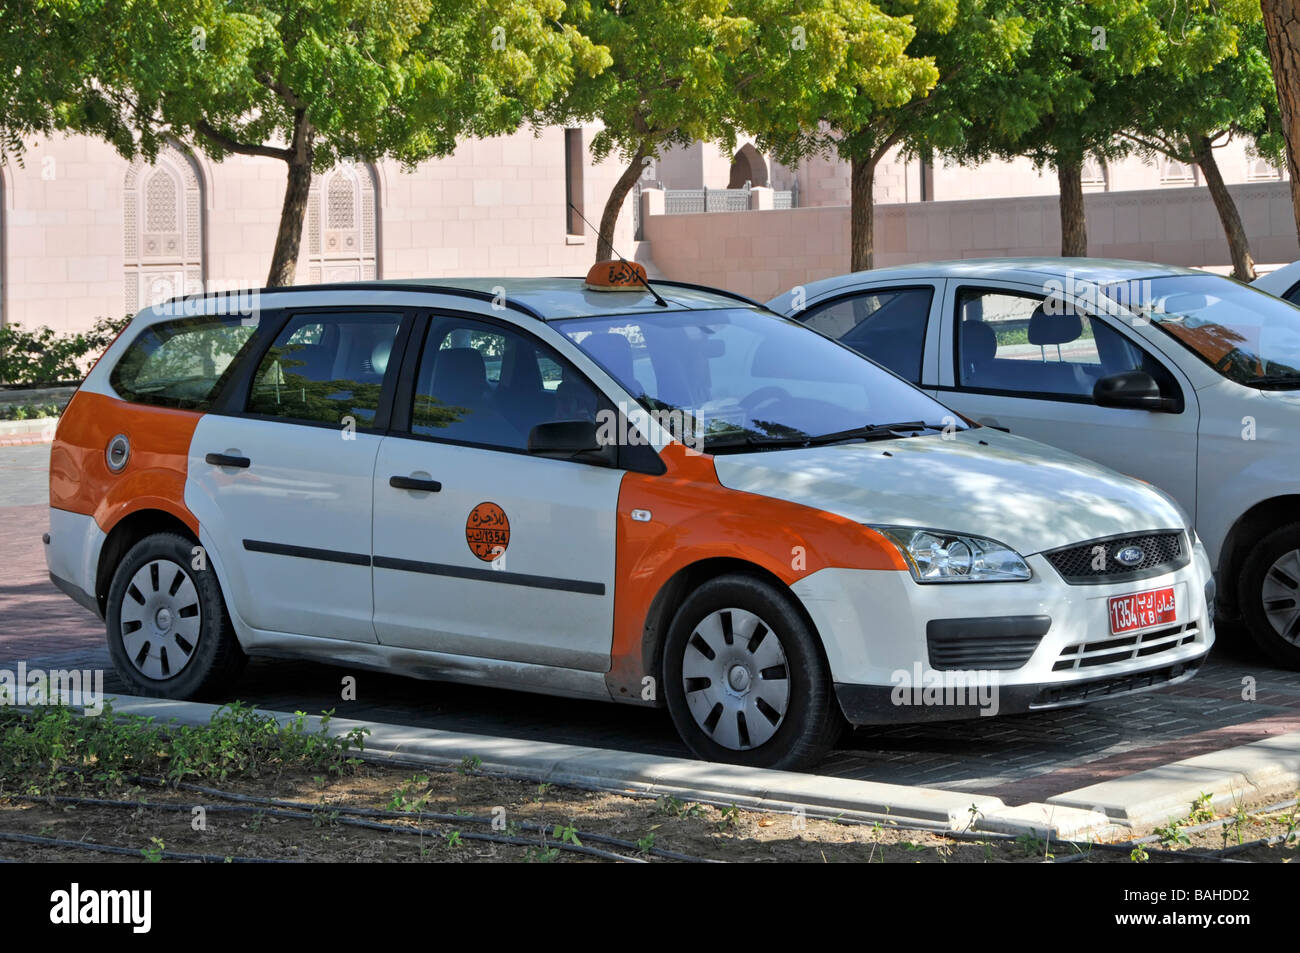 Vista laterale e frontale cabina taxi con codice colore ufficiale arancione e bianco selezionati pannelli carrozzeria scelti in colore Muscat Oman sul Golfo di Oman Medio Oriente Foto Stock